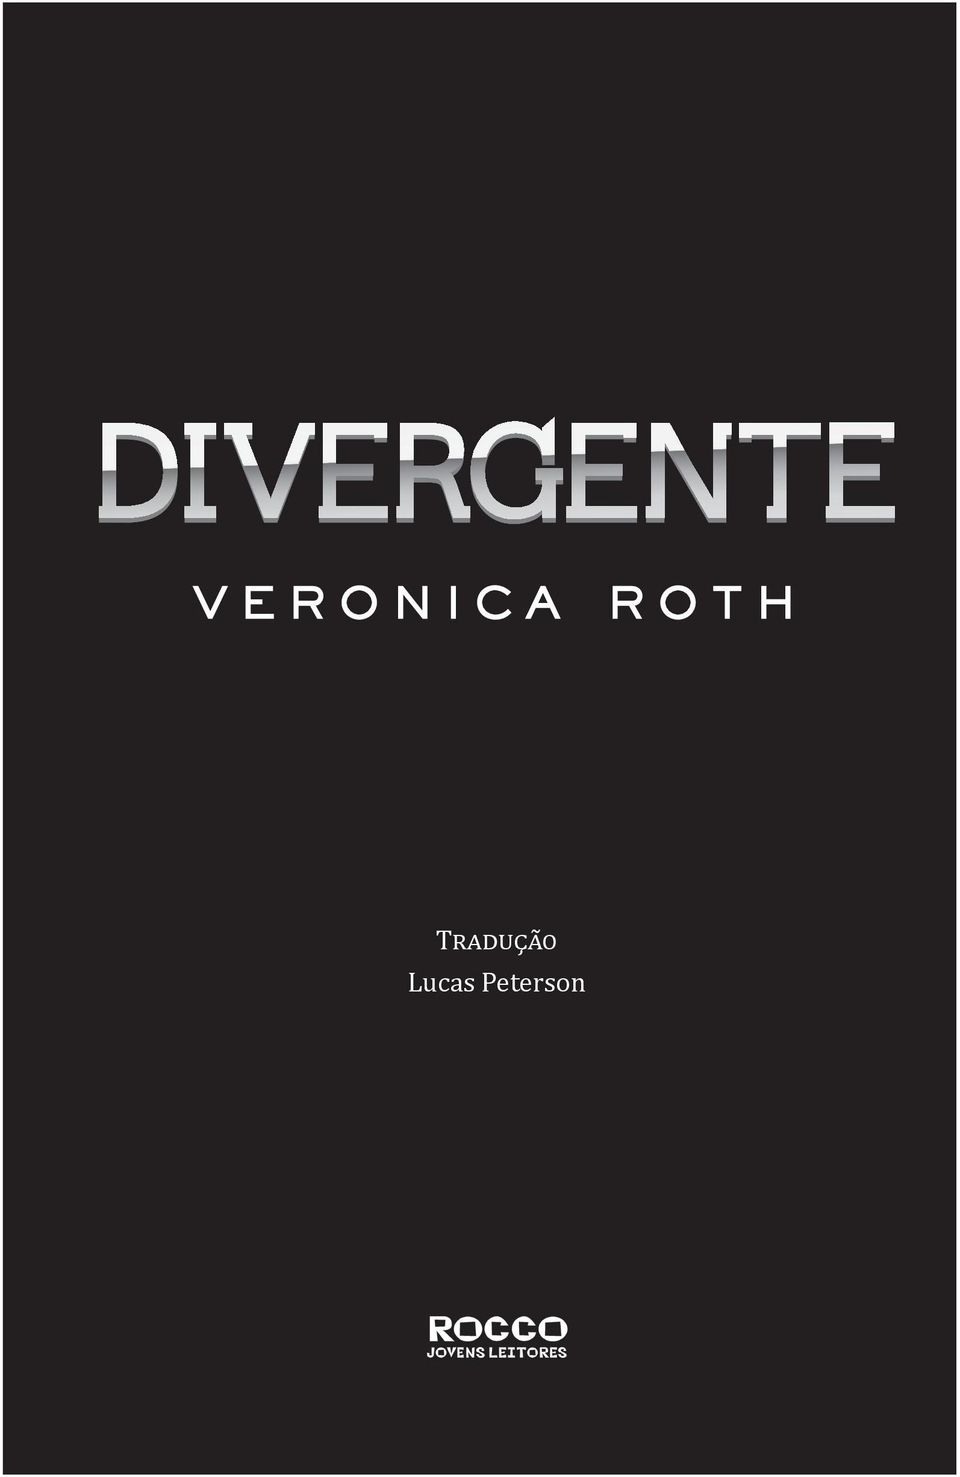 DivergentHC txt